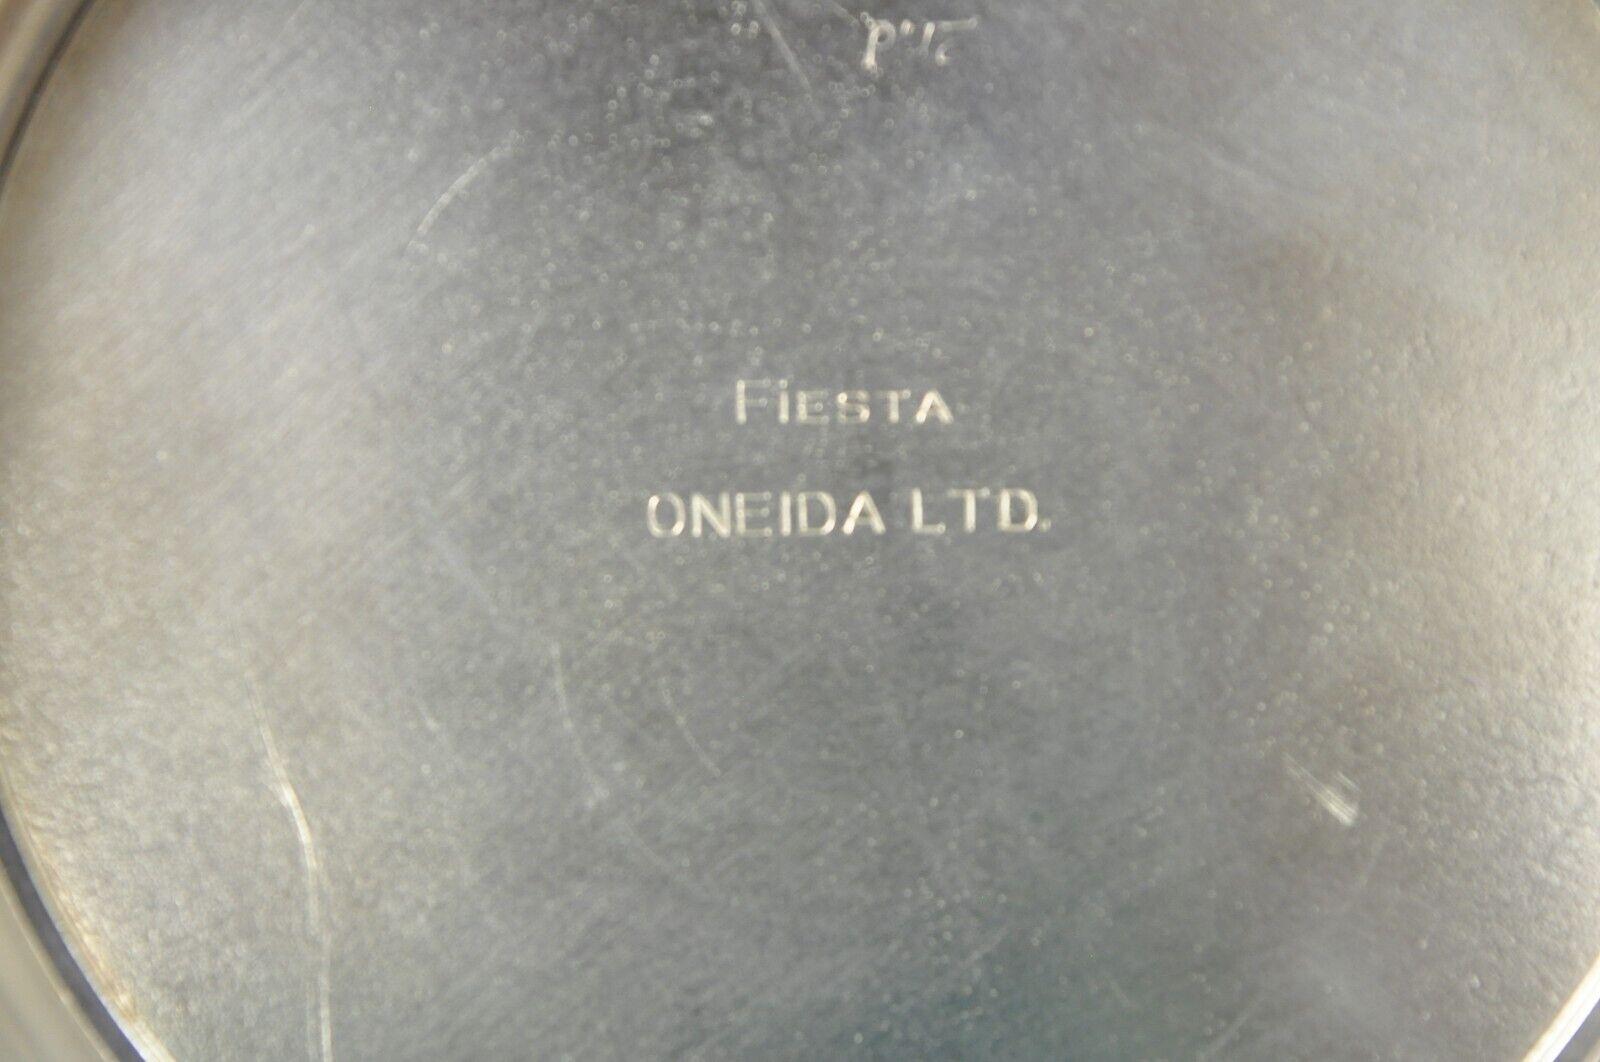 20th Century Vintage Oneida LTD Fiesta Silver Plate Regency Style Water Pitcher